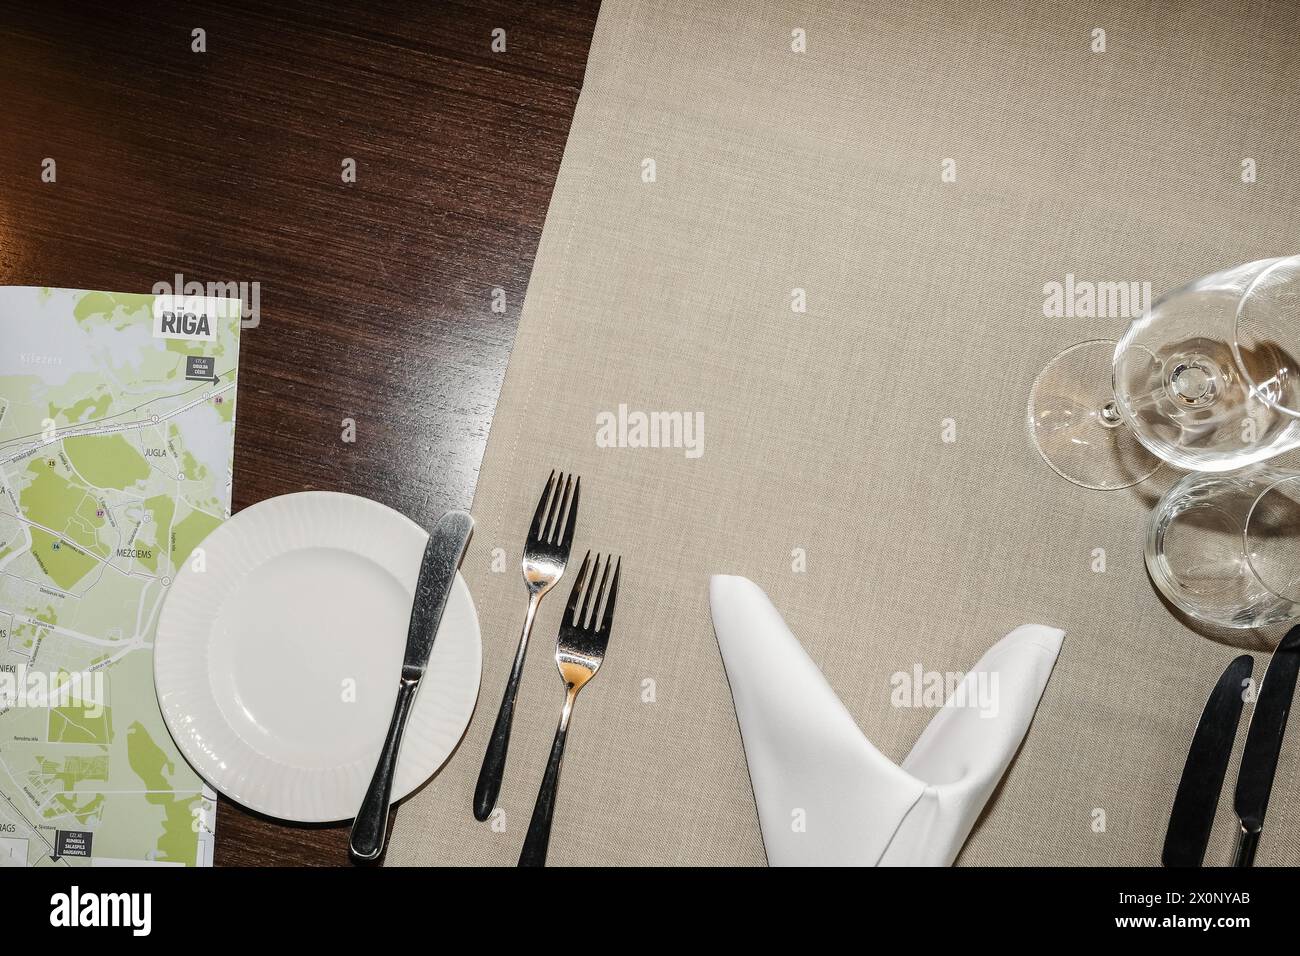 Blick von oben auf einen servierten Tisch in einem Restaurant mit Geschirr und Gläsern für Speisen und Getränke und eine Karte von Riga, Lettland für einen Reisenden. Stockfoto